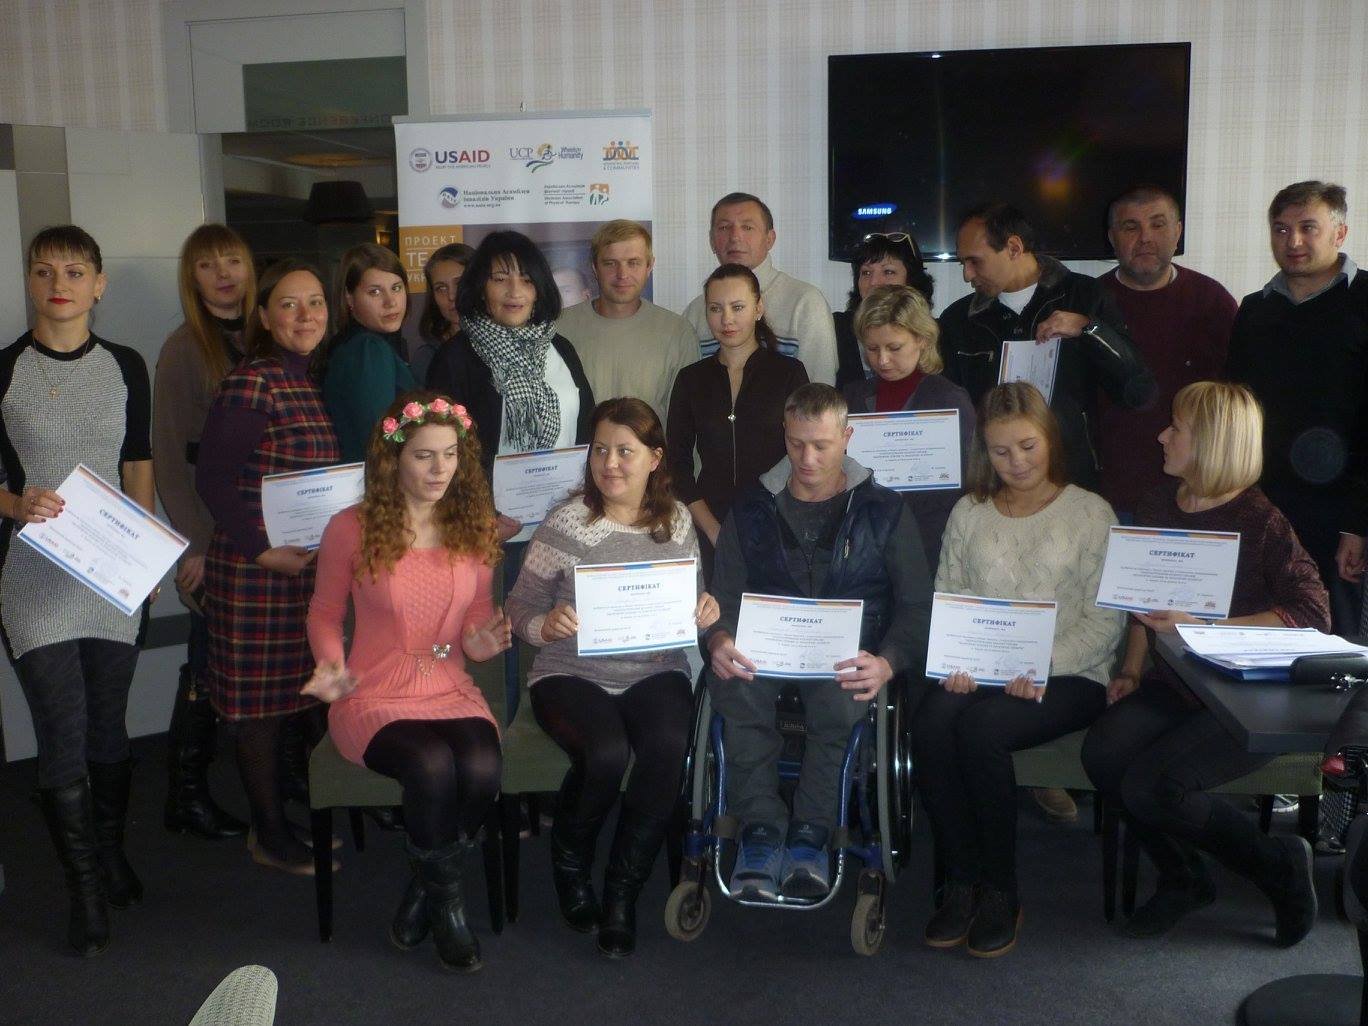 Черговий семінар із соціального підприємництва для внутрішньо переміщених осіб з інвалідністю завершився в Харкові